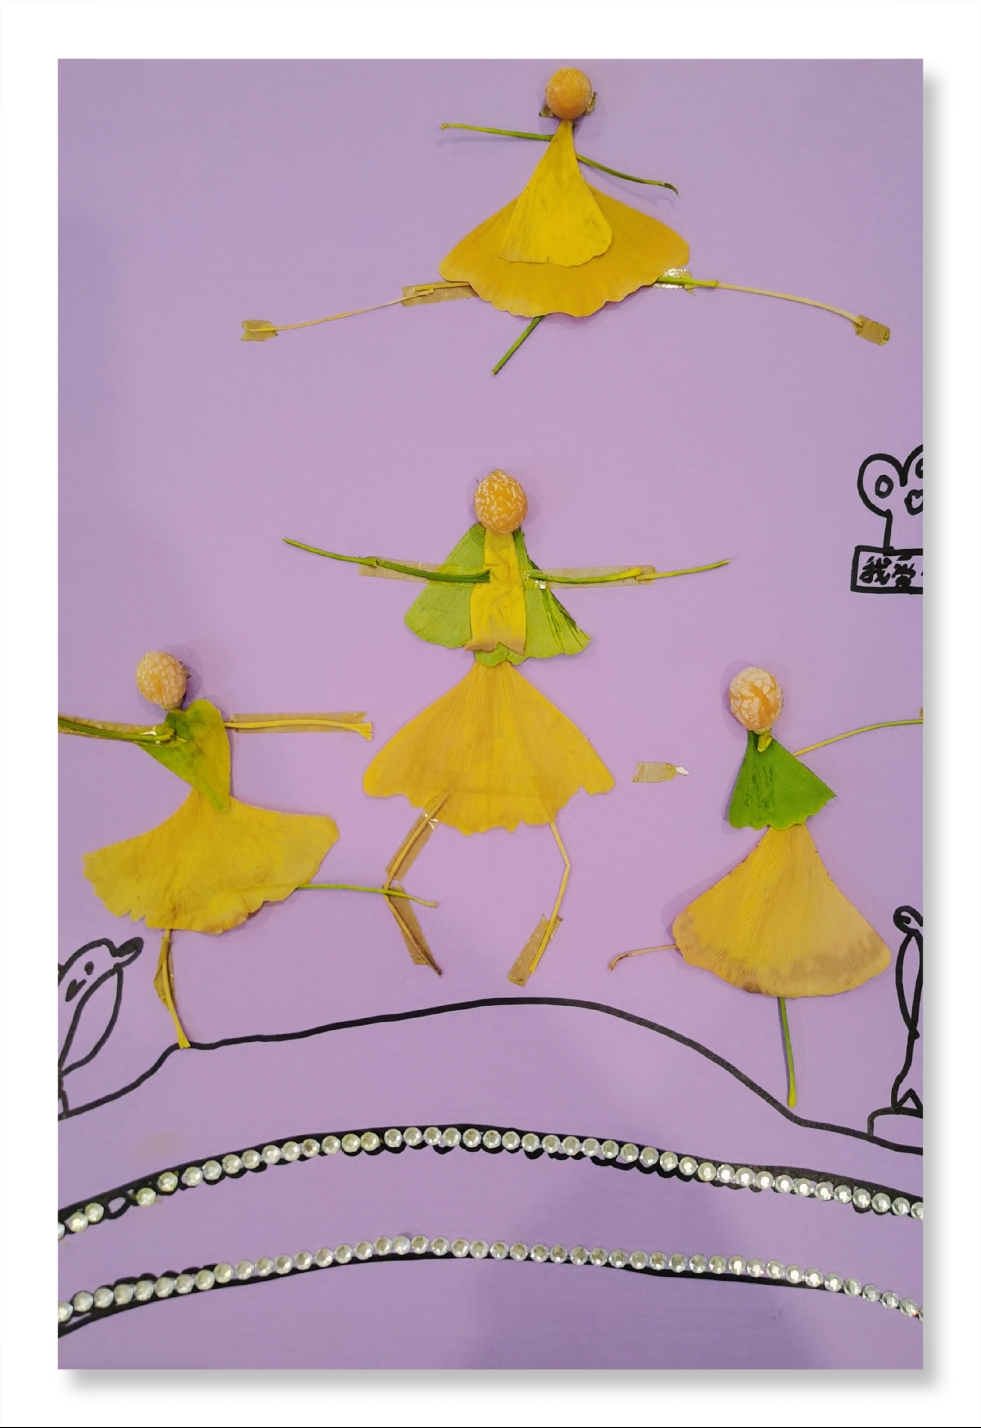 孩子们在老师的引导下用银杏叶制作小蝴蝶,剪裁,拼贴出舞动的